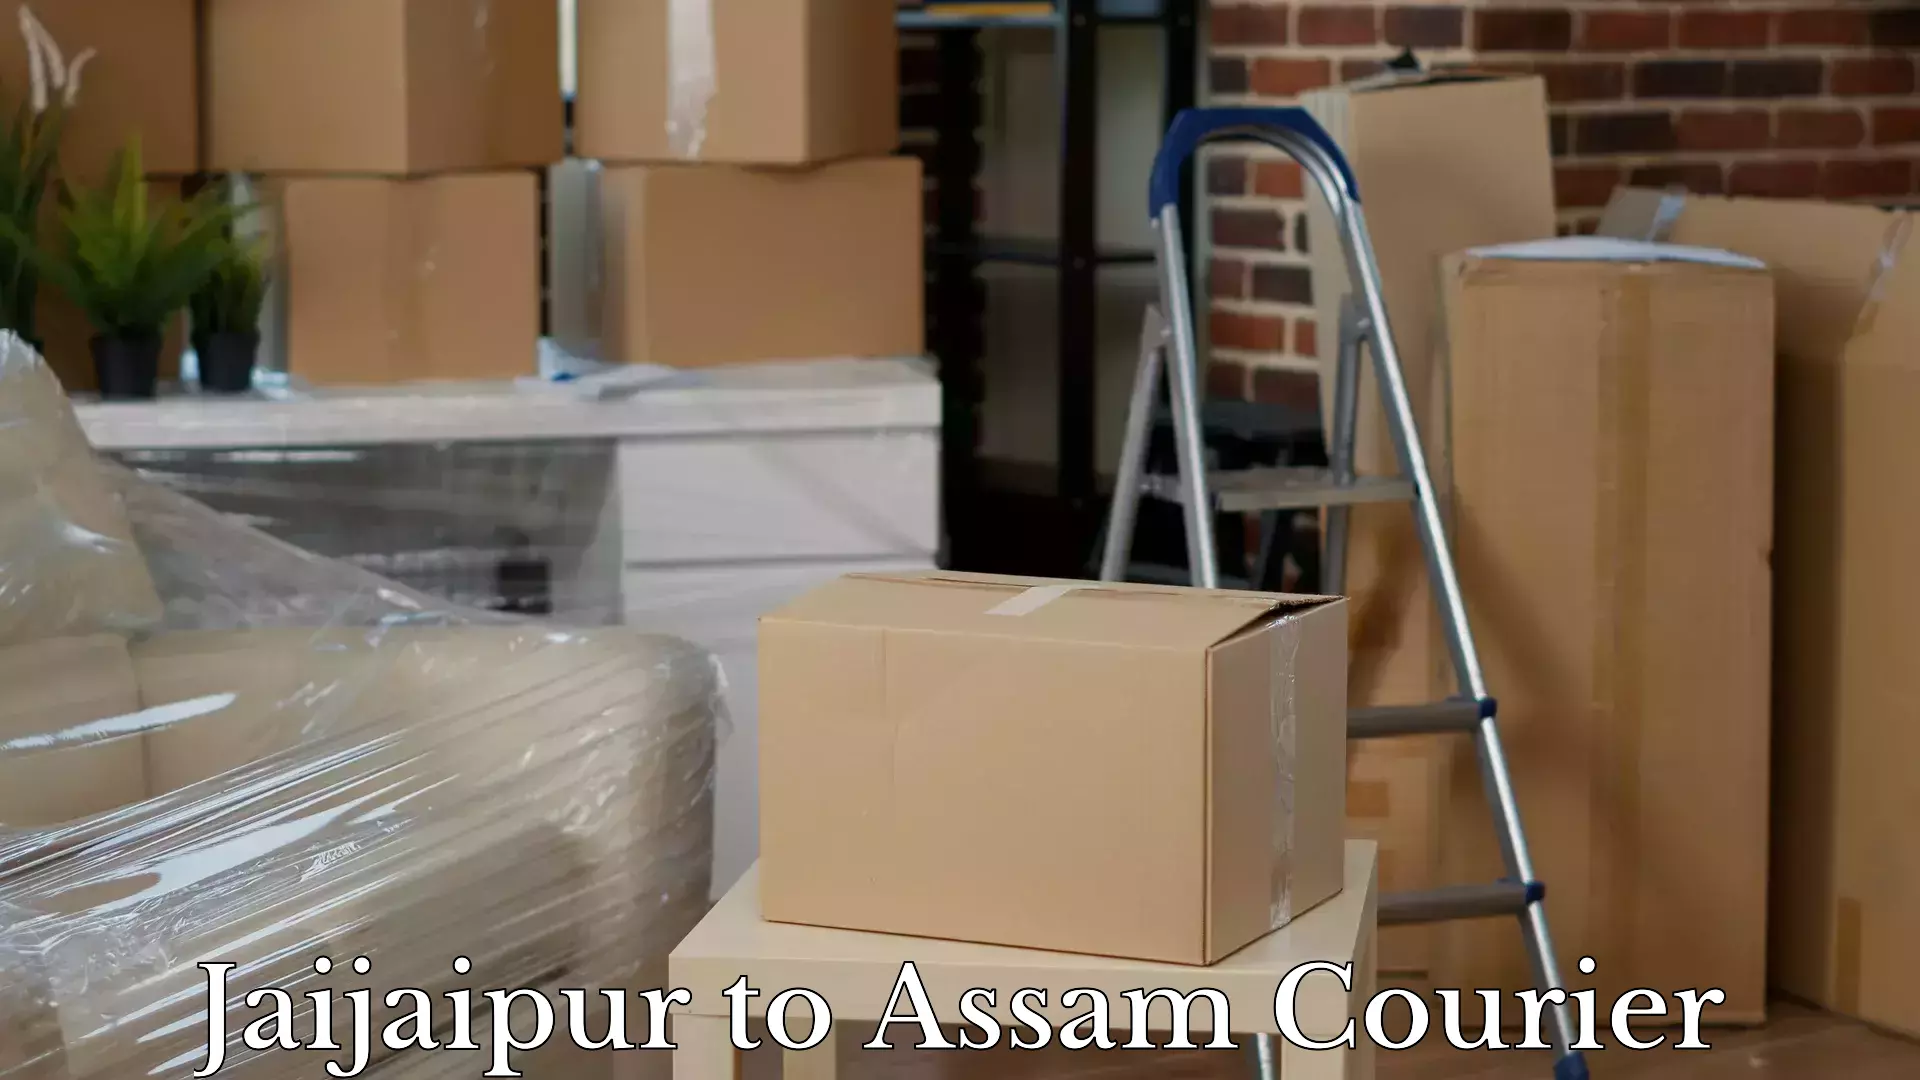 Luggage delivery app Jaijaipur to Balipara